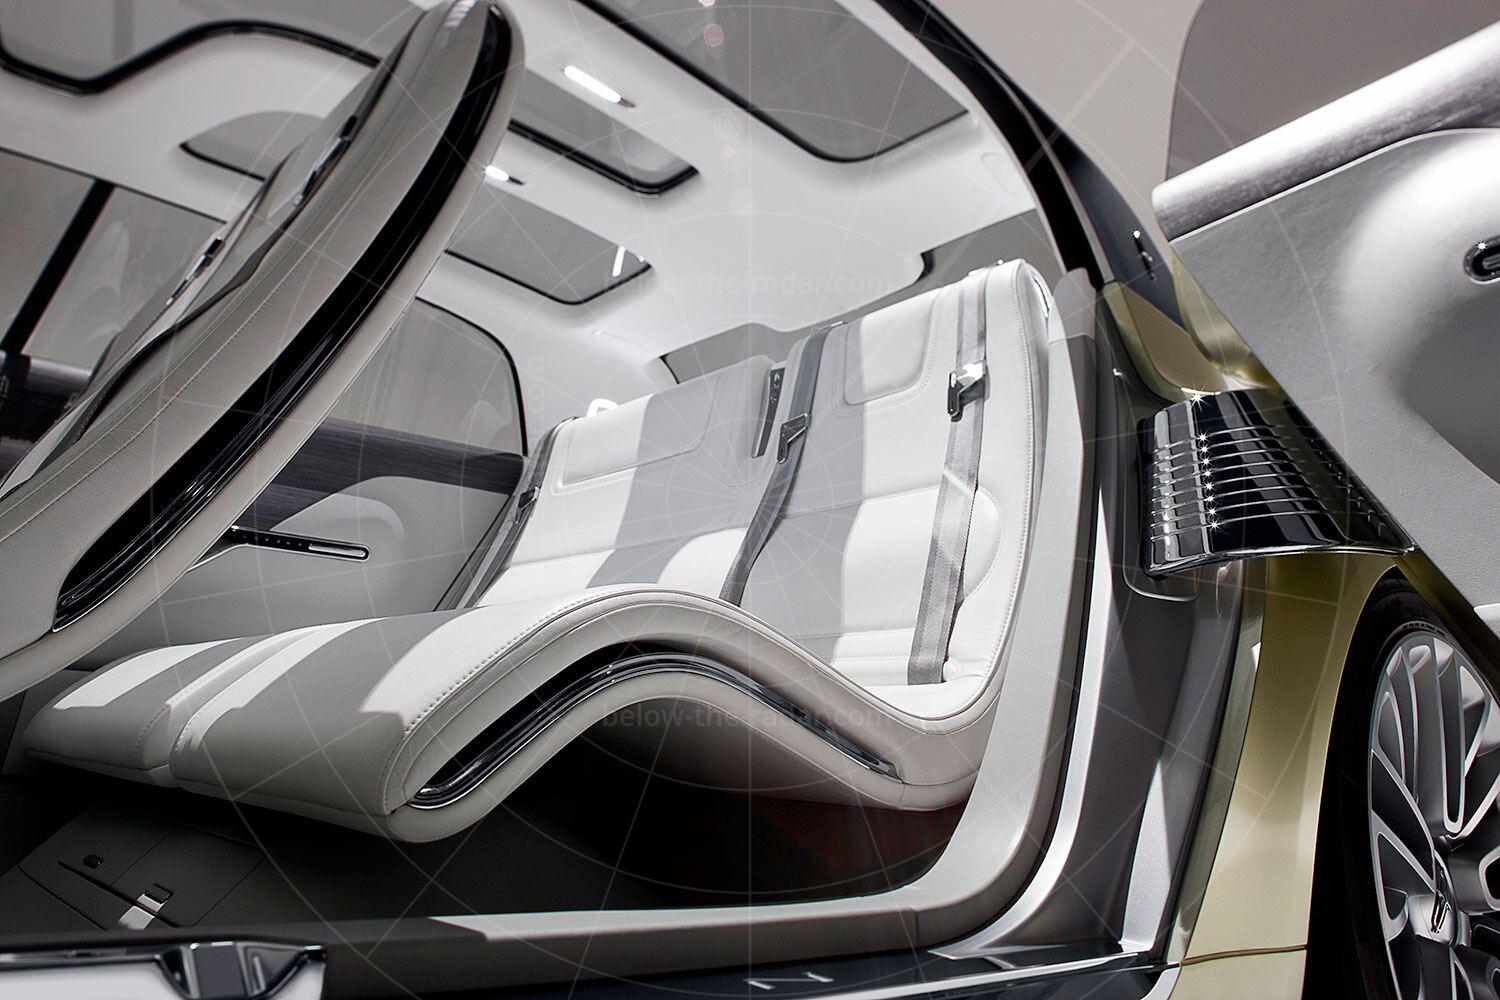 Lincoln C Concept rear seat Pic: Lincoln | Lincoln C concept rear seat